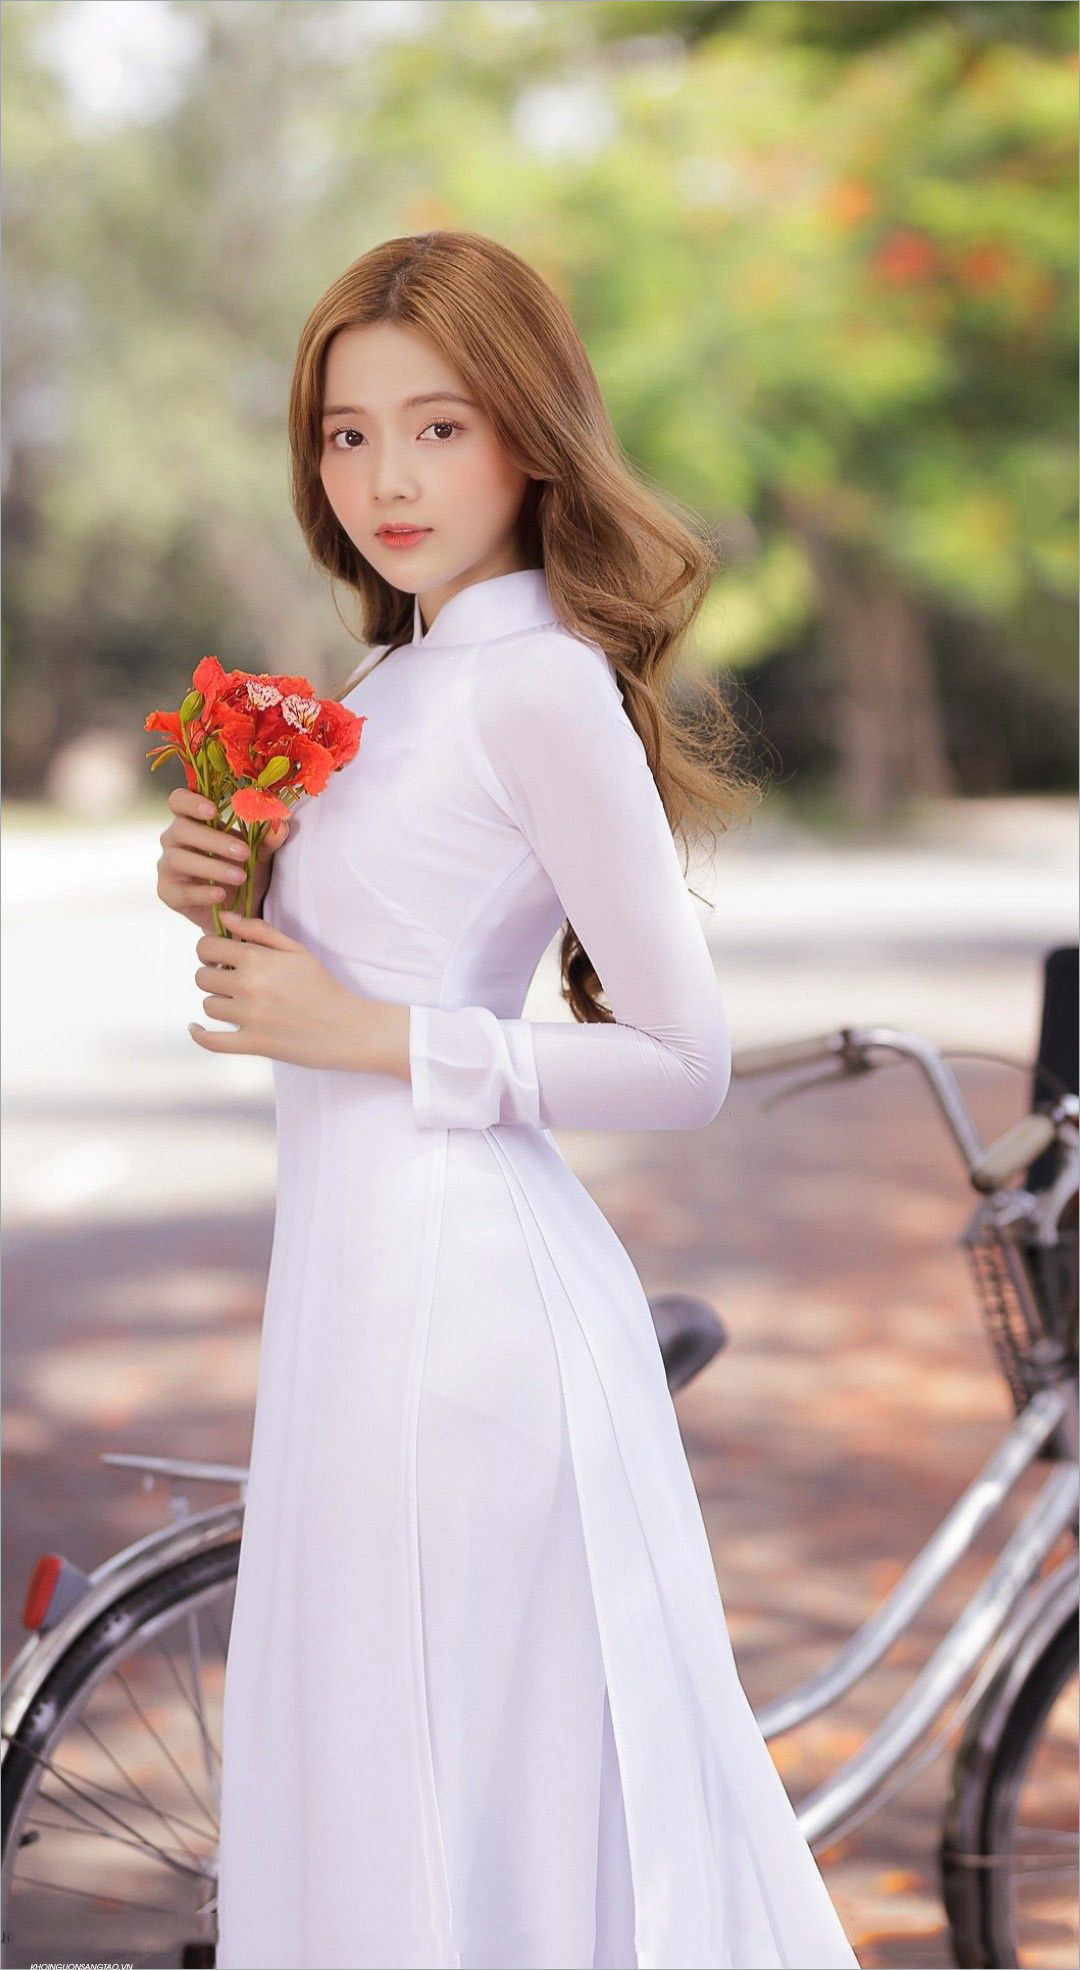 Hãy đến với bộ sưu tập hình ảnh gái xinh mặc áo dài để thưởng thức tinh hoa văn hóa Việt Nam và cùng với đó là những người đẹp tuyệt vời trong bộ trang phục truyền thống. Những hình ảnh này sẽ khiến bạn không thể rời mắt và cảm nhận được sự quyến rũ hiếm có.